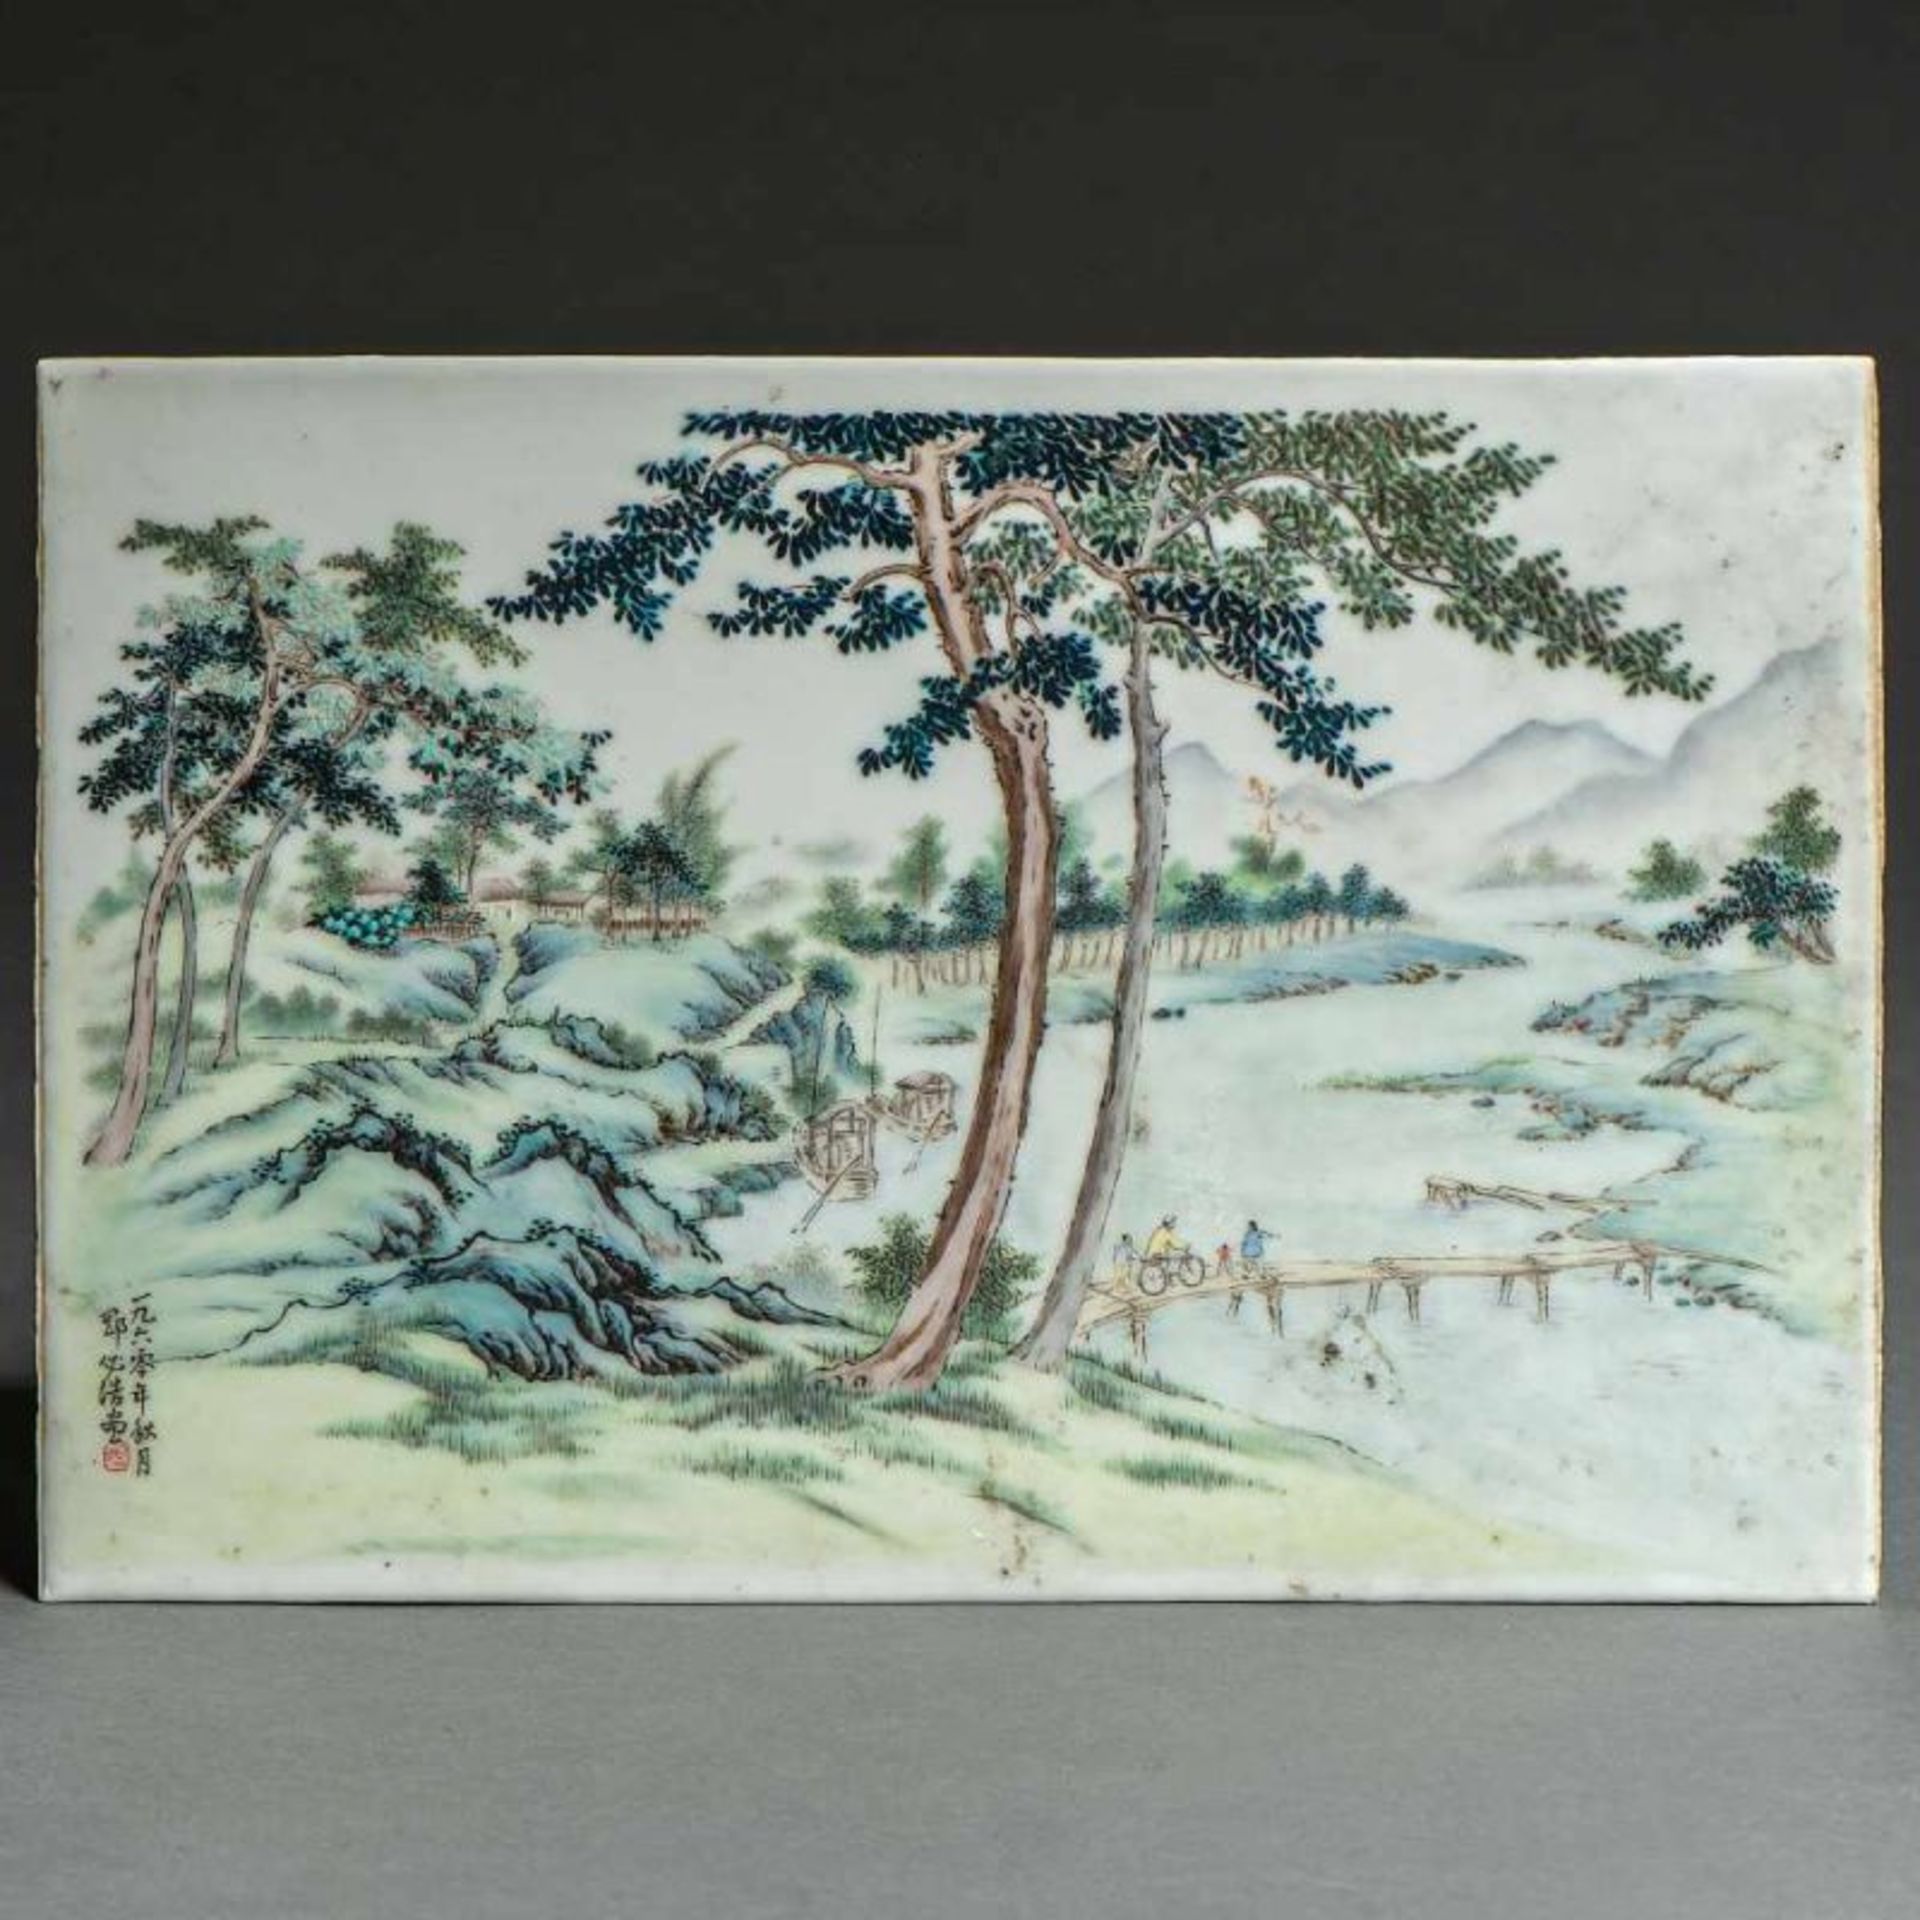 Placa rectangular en porcelana China. Trabajo Chino, Siglo XIX-XXDecorada con escena fluvial y